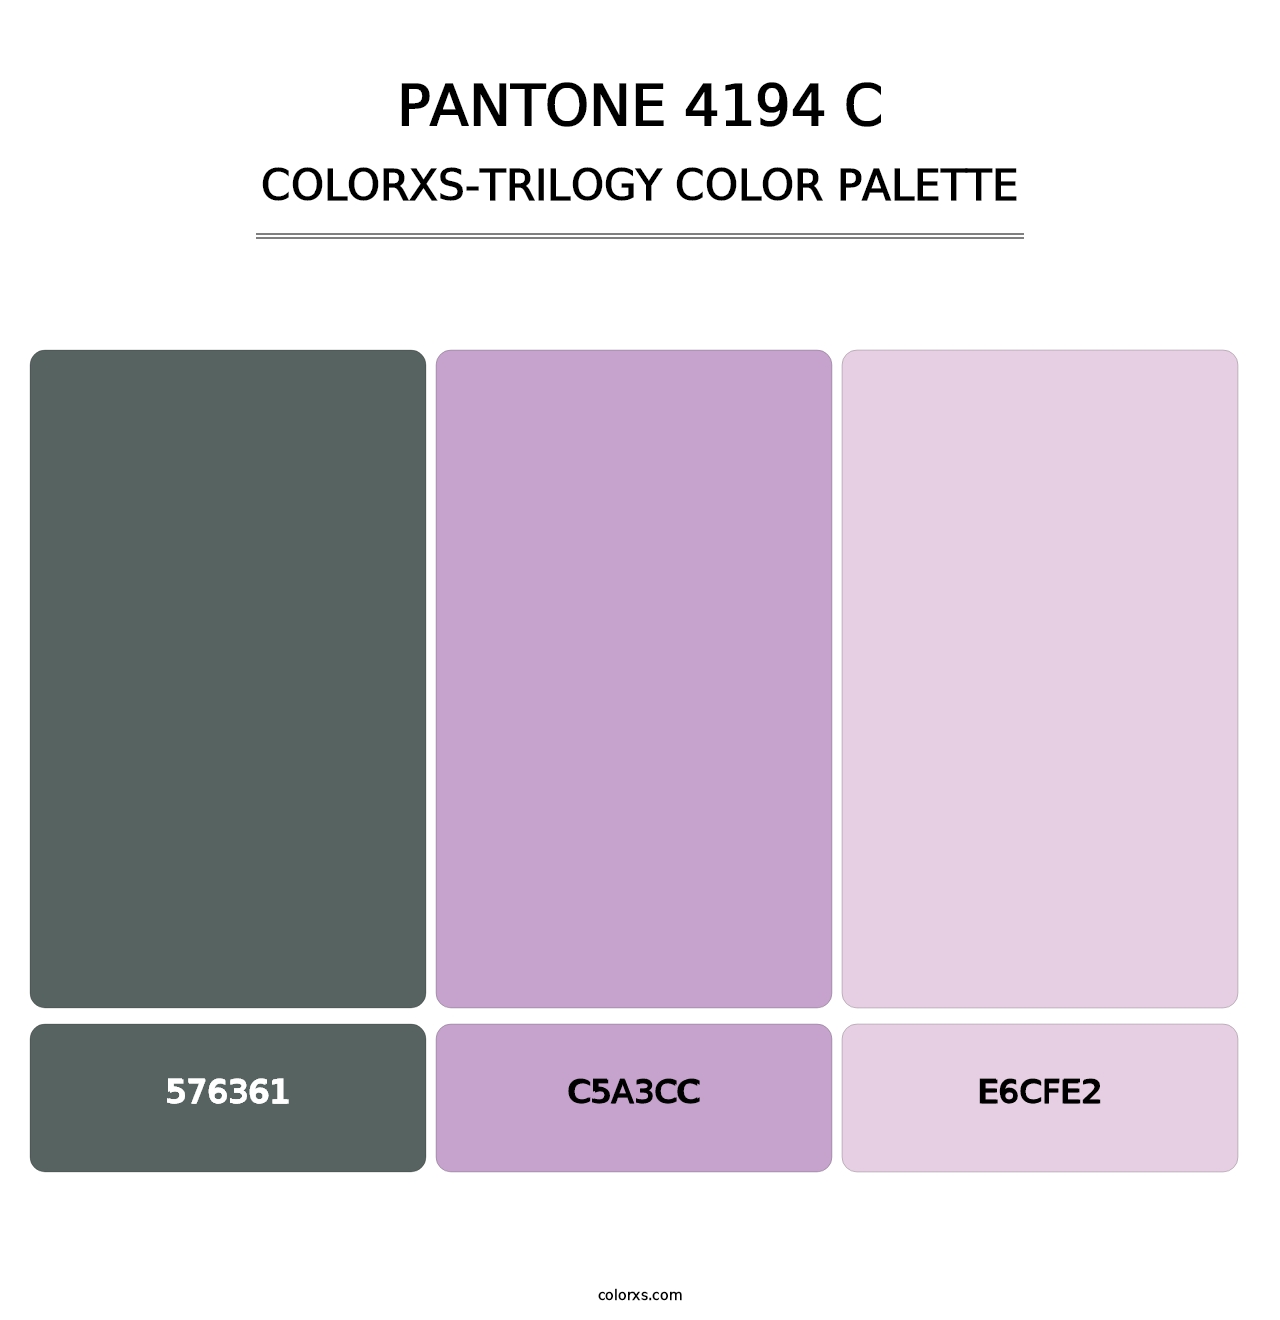 PANTONE 4194 C - Colorxs Trilogy Palette